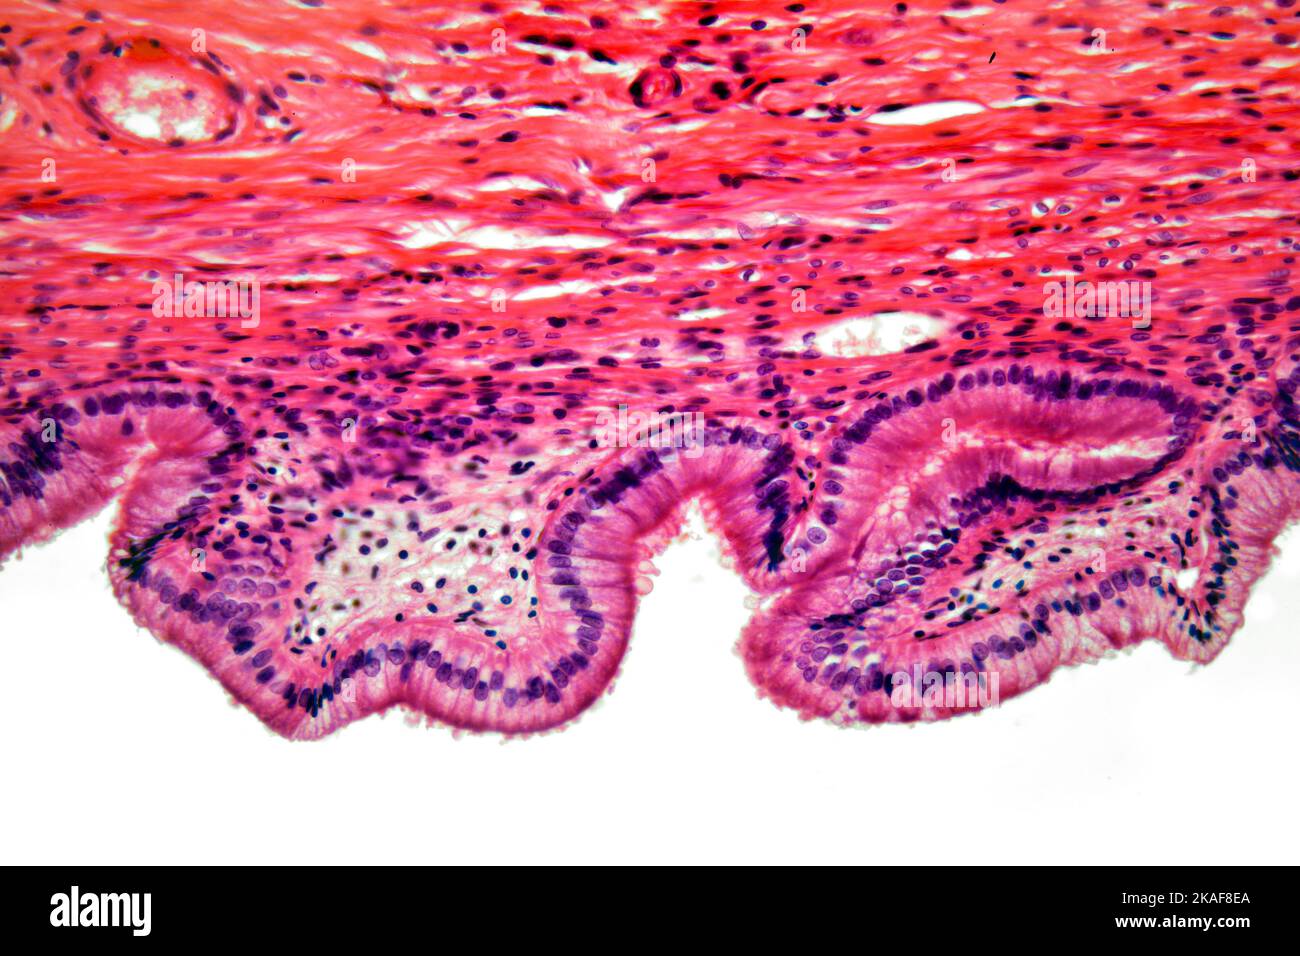 La vesícula biliar humana sección brightfield microfotografía Foto de stock